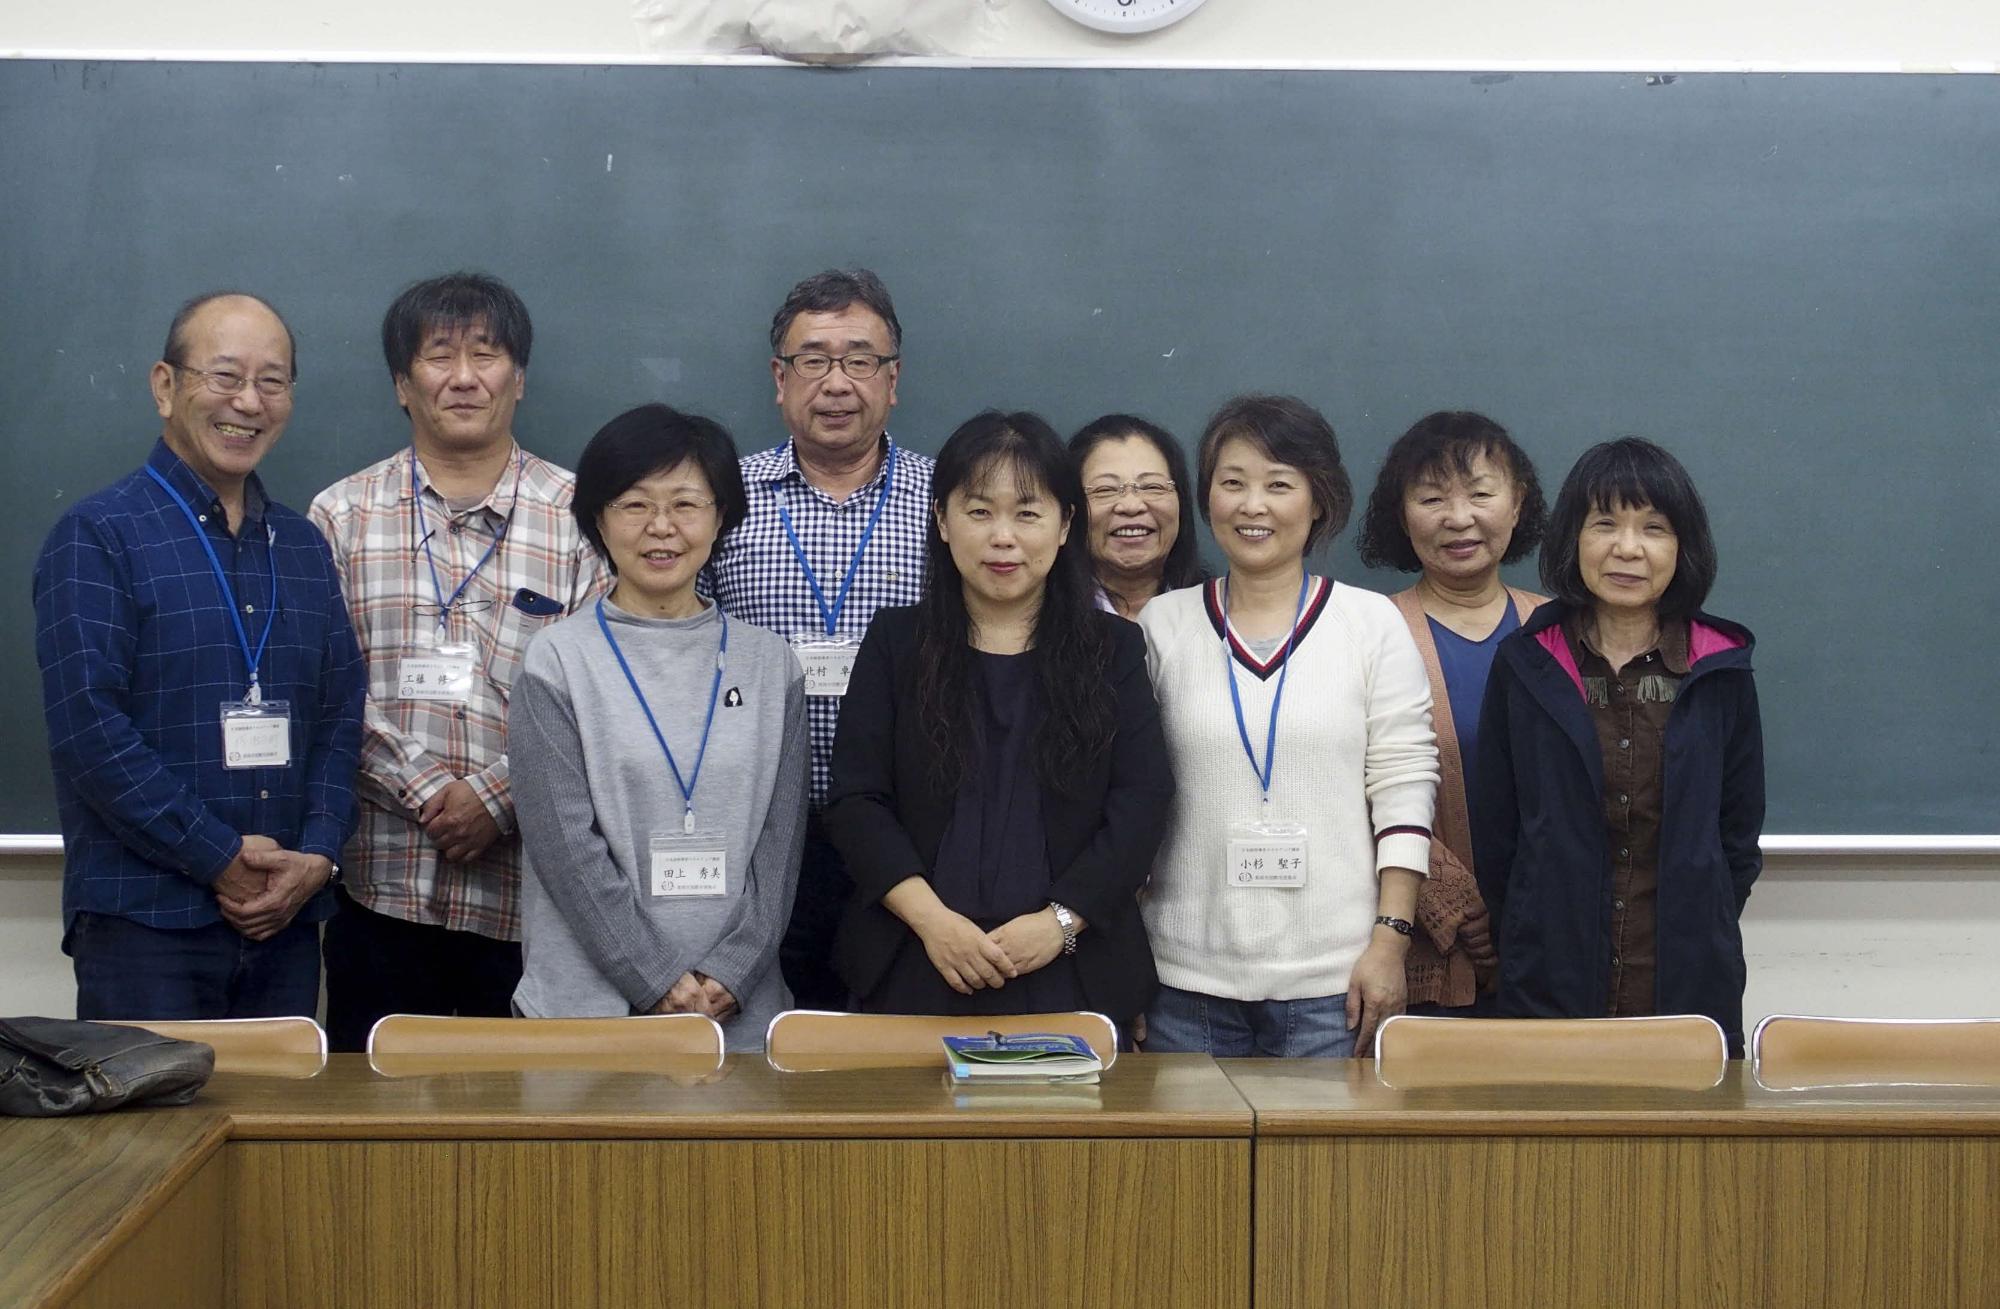 日本語指導者スキルアップ講座に参加した9名の参加者達の集合写真